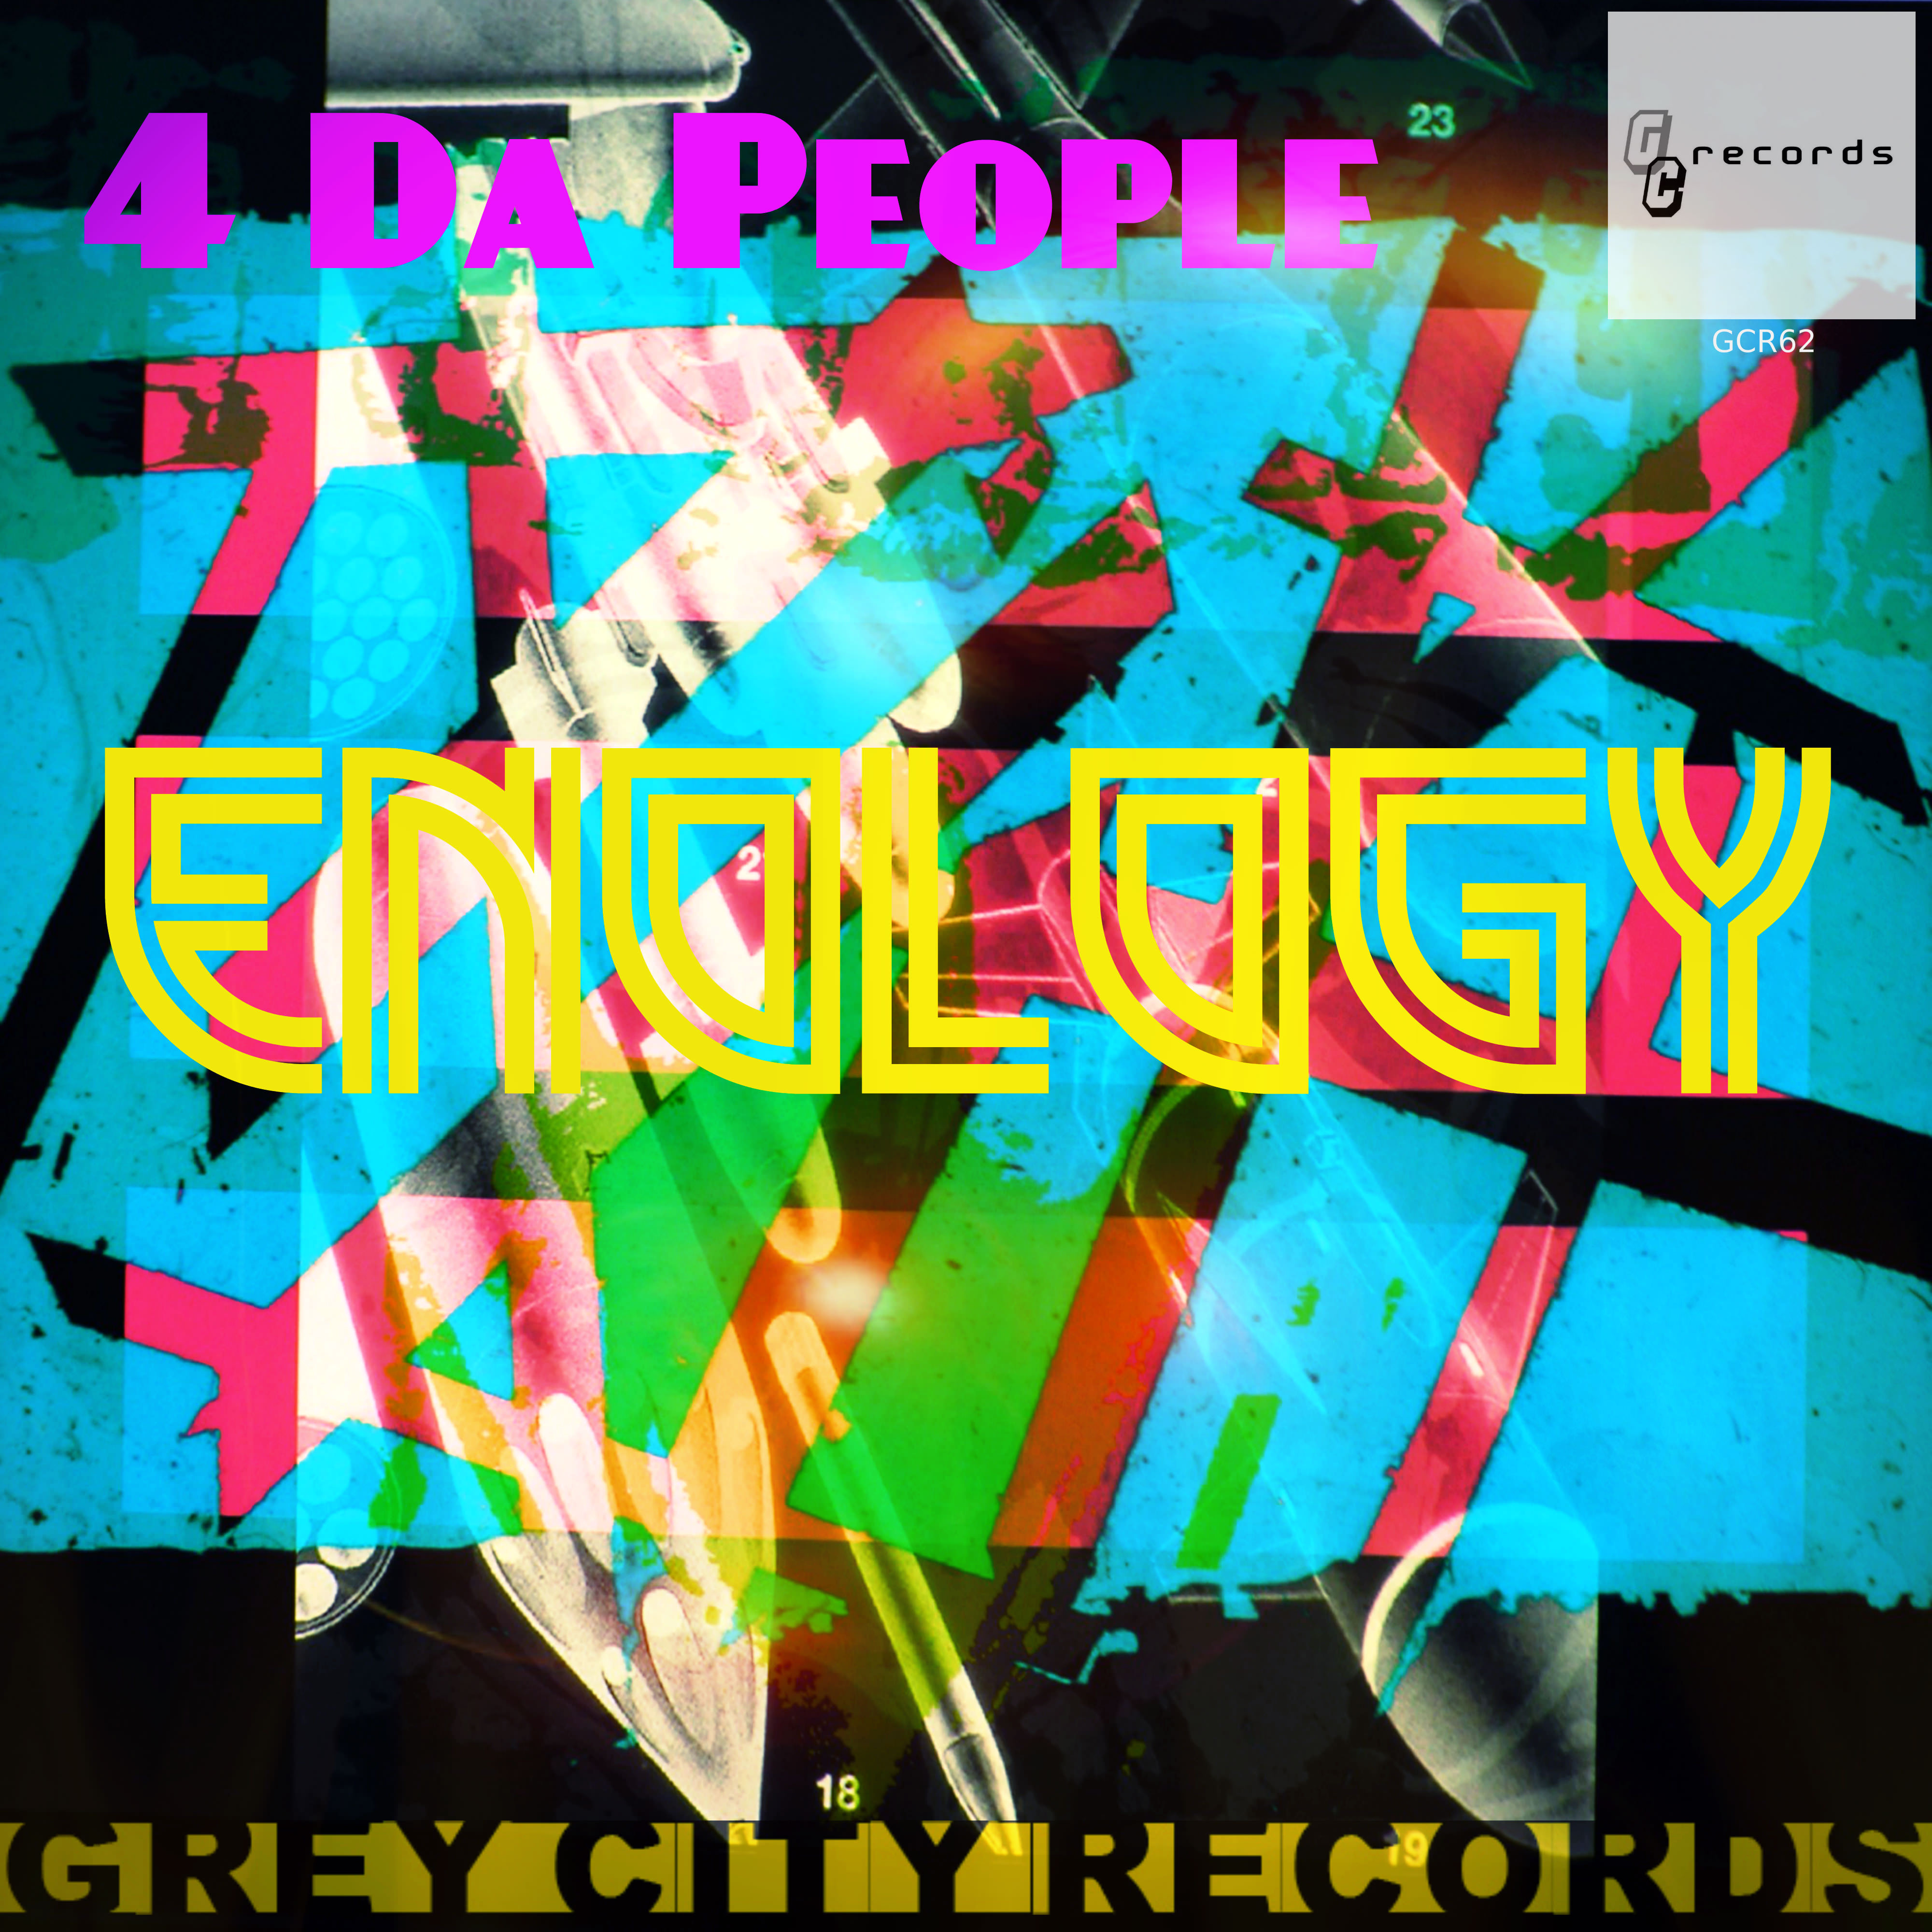 Enology